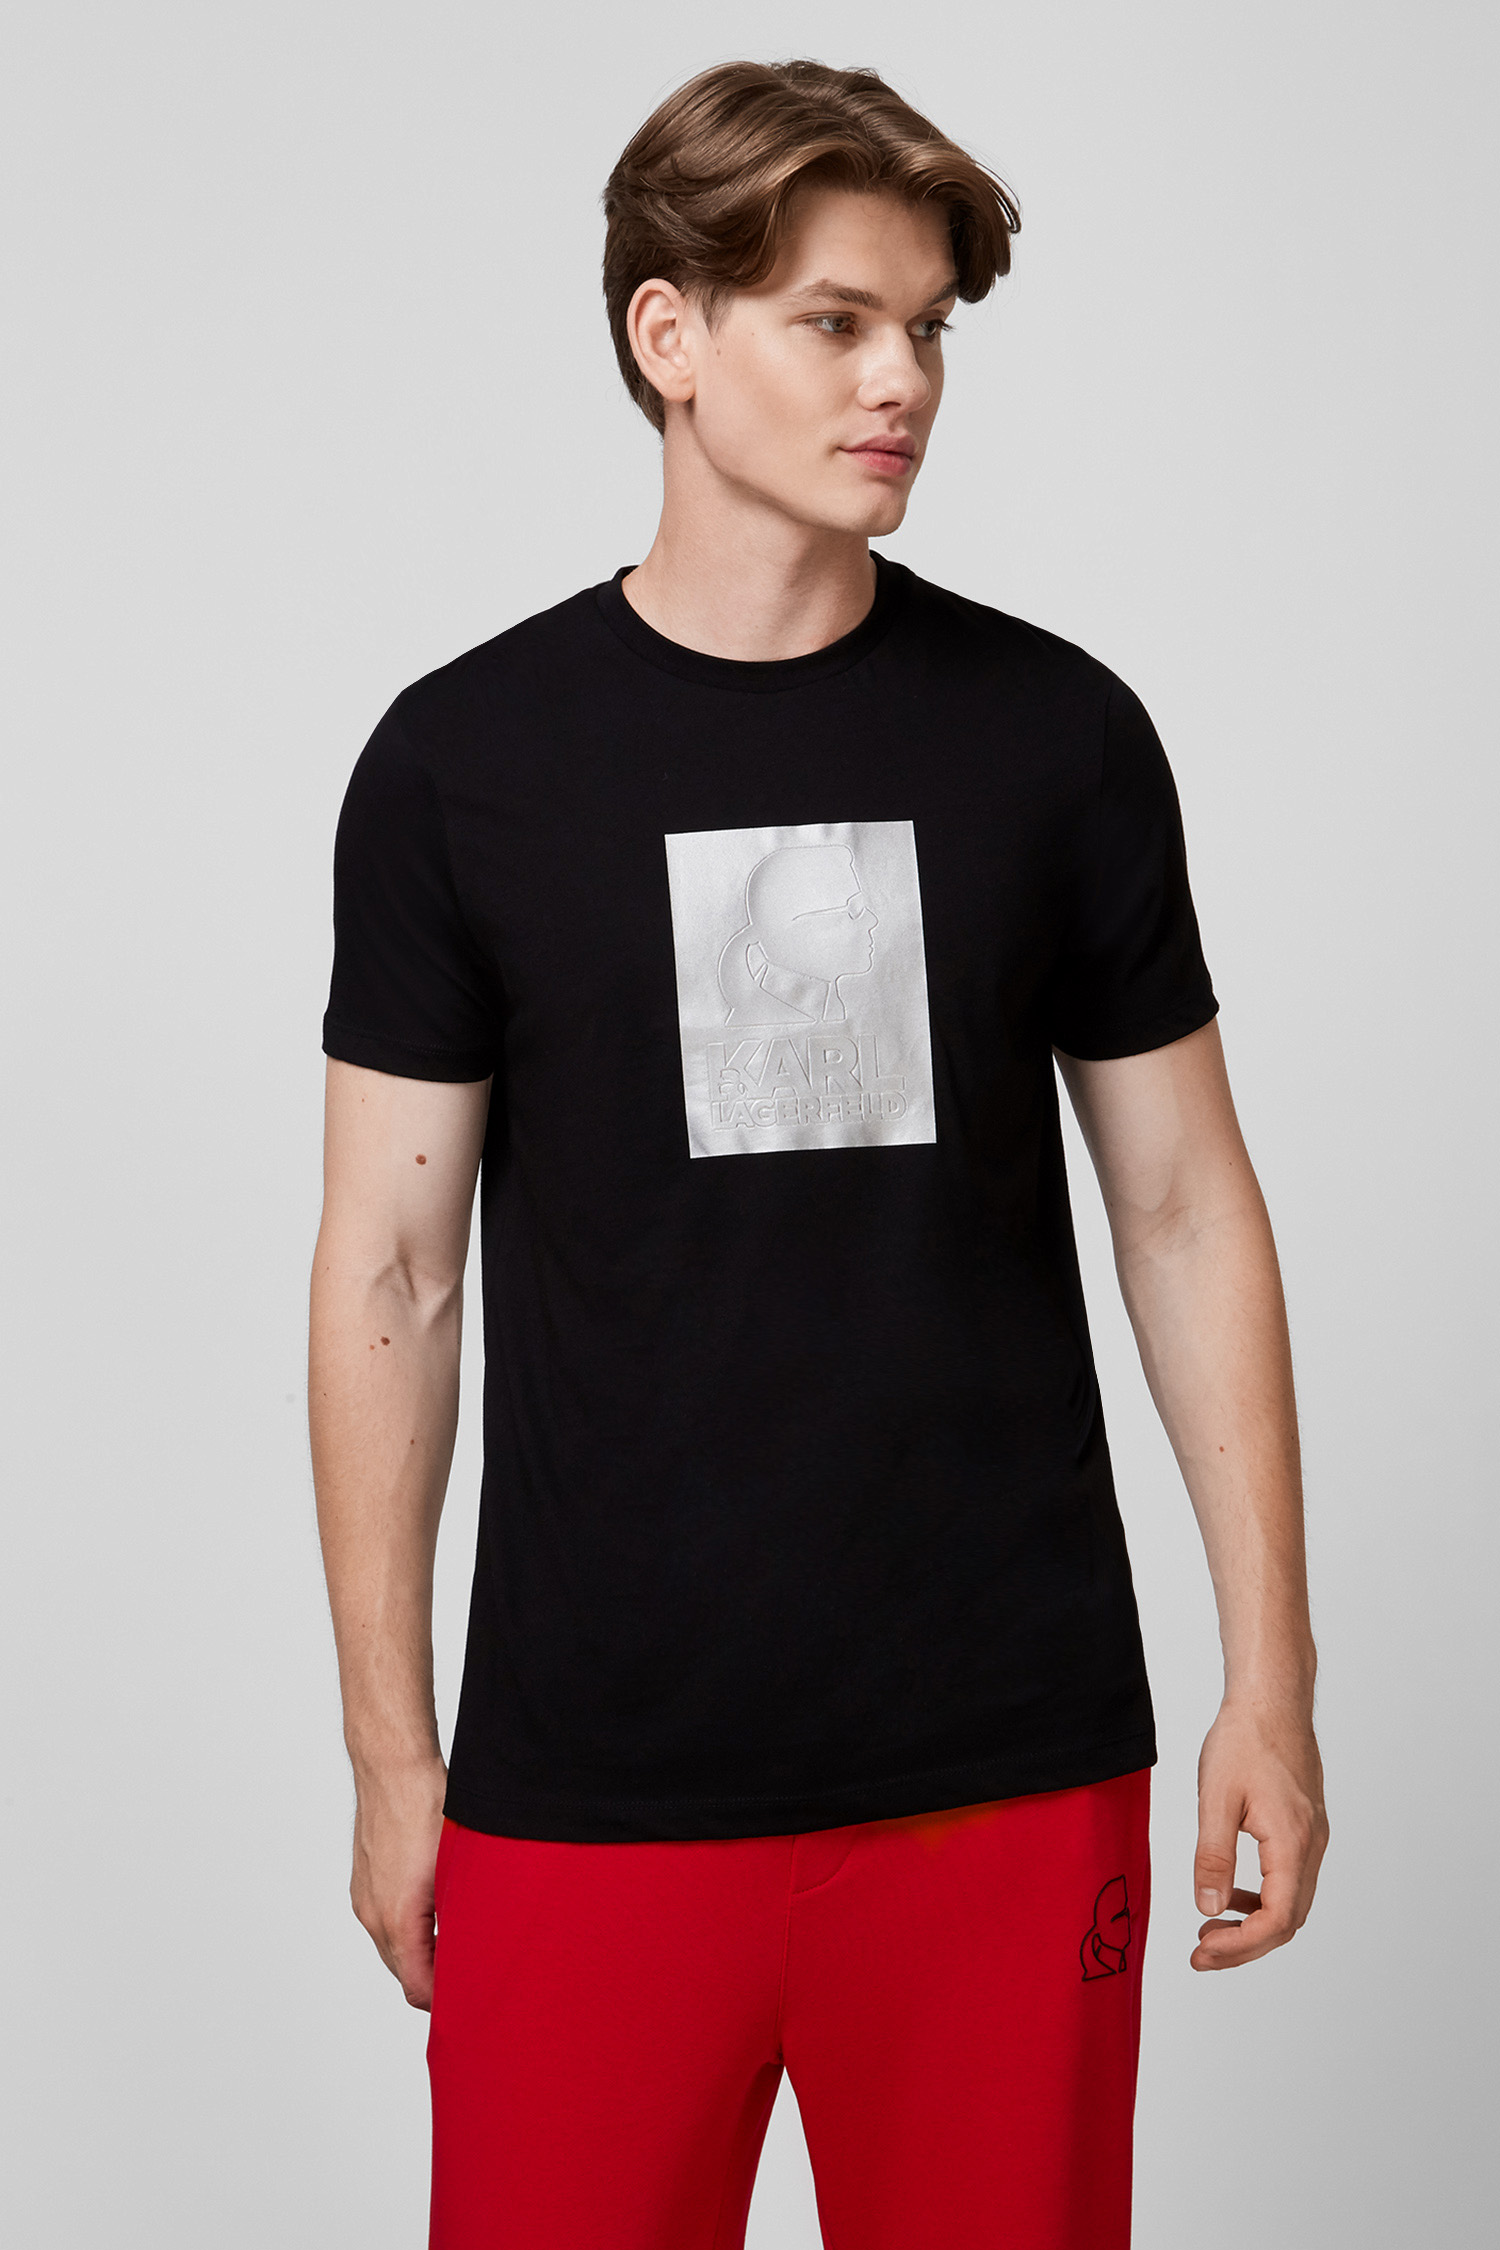 Чорна футболка для хлопців Karl Lagerfeld 511224.755082;990